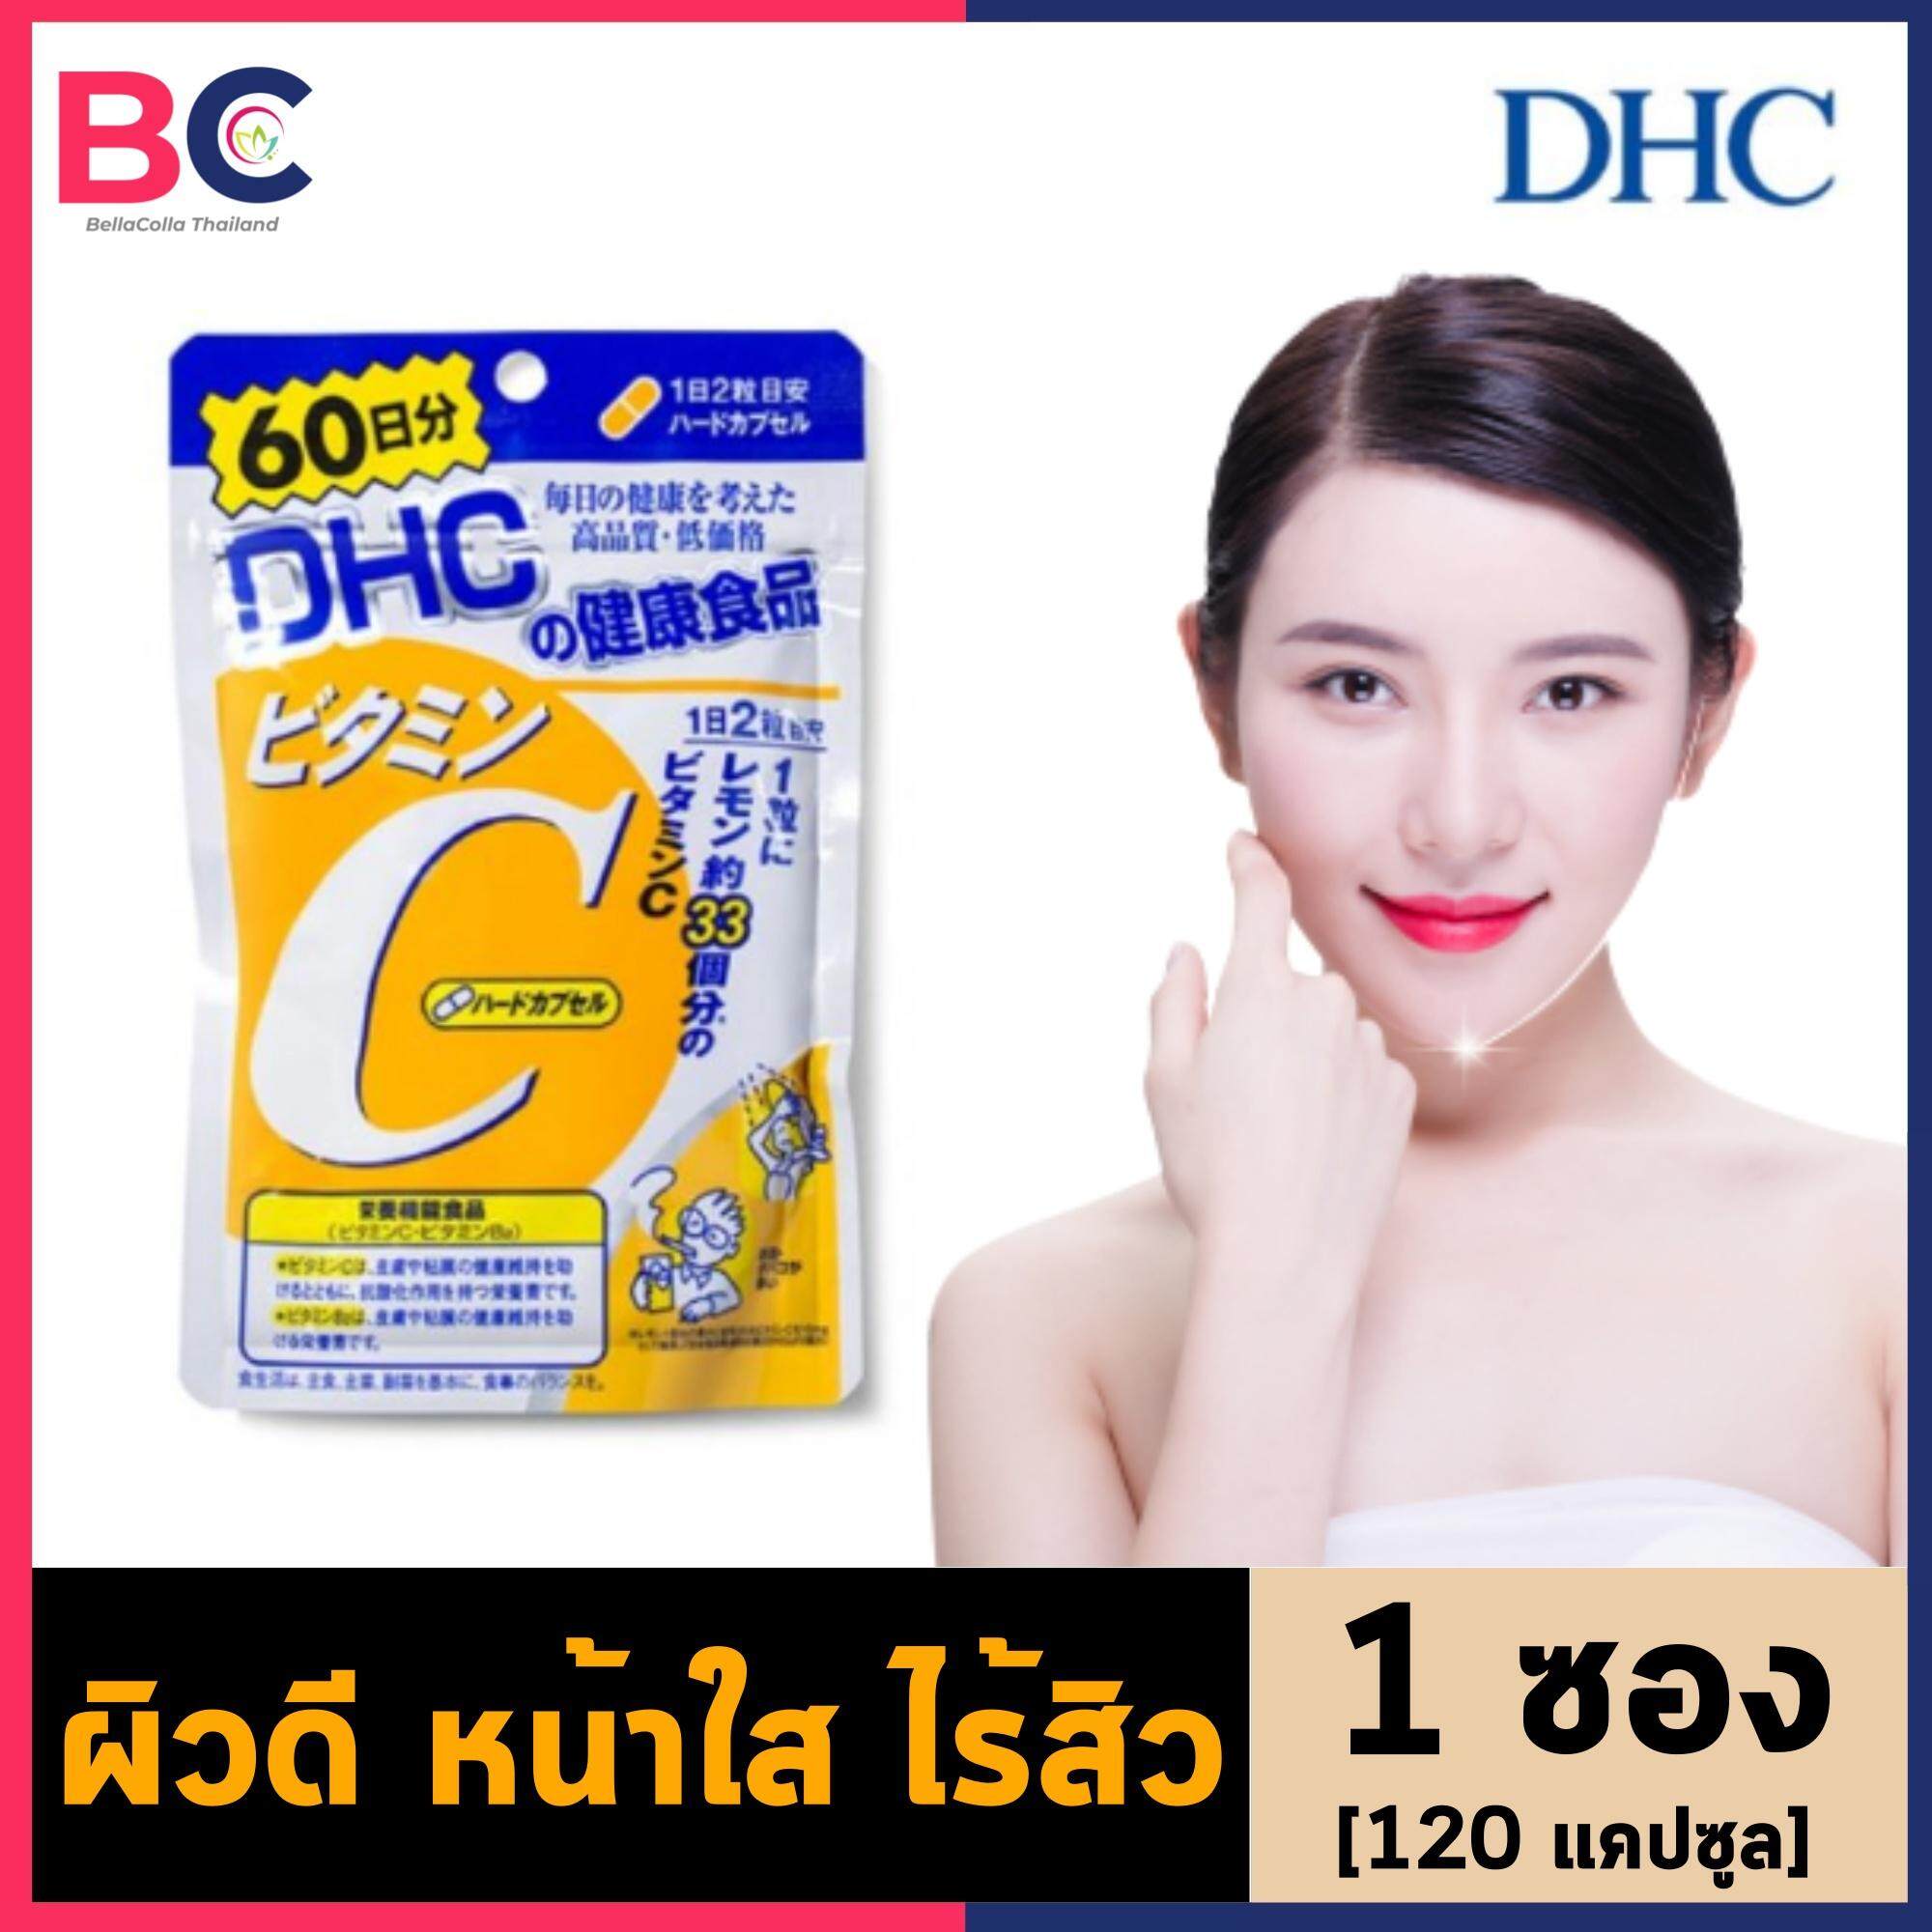 วิตามินซี DHC  [1 ซอง] [120 แคปซูล / 60 วัน] DHC Vitamin C วิตามิน DHC